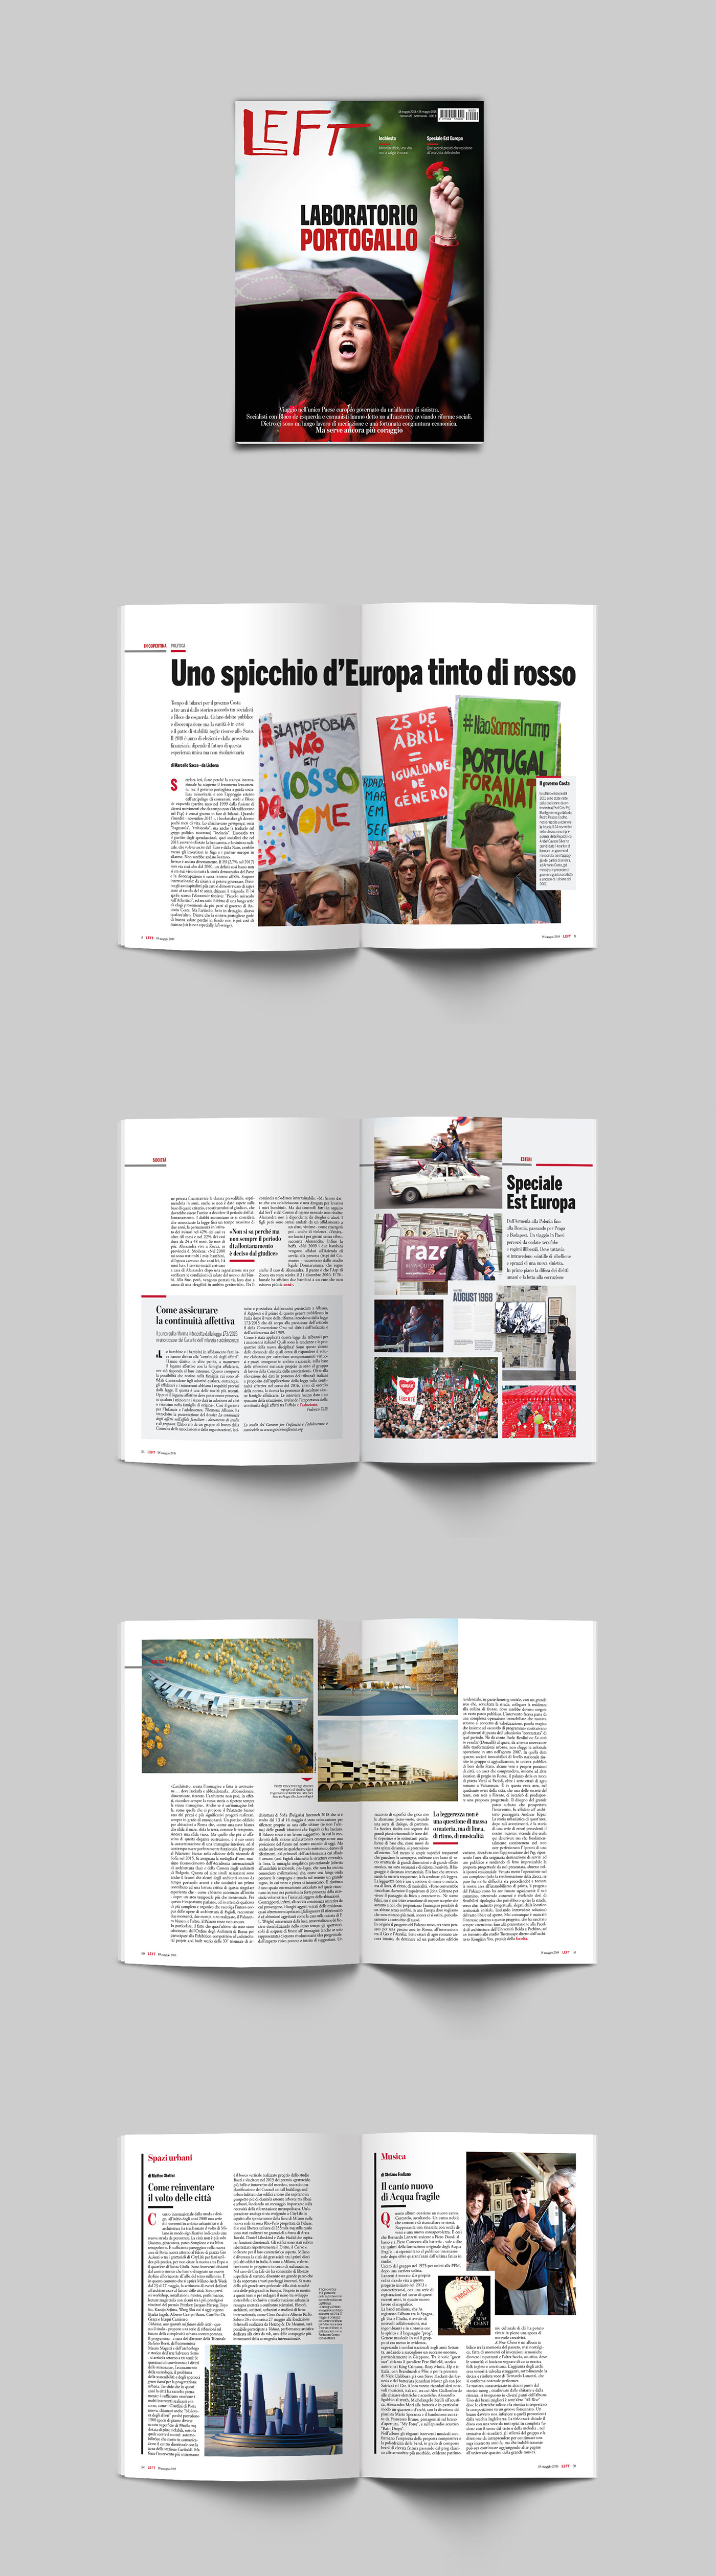 editorial graphic design  magazine cover InDesign impaginazione riviste Copertine